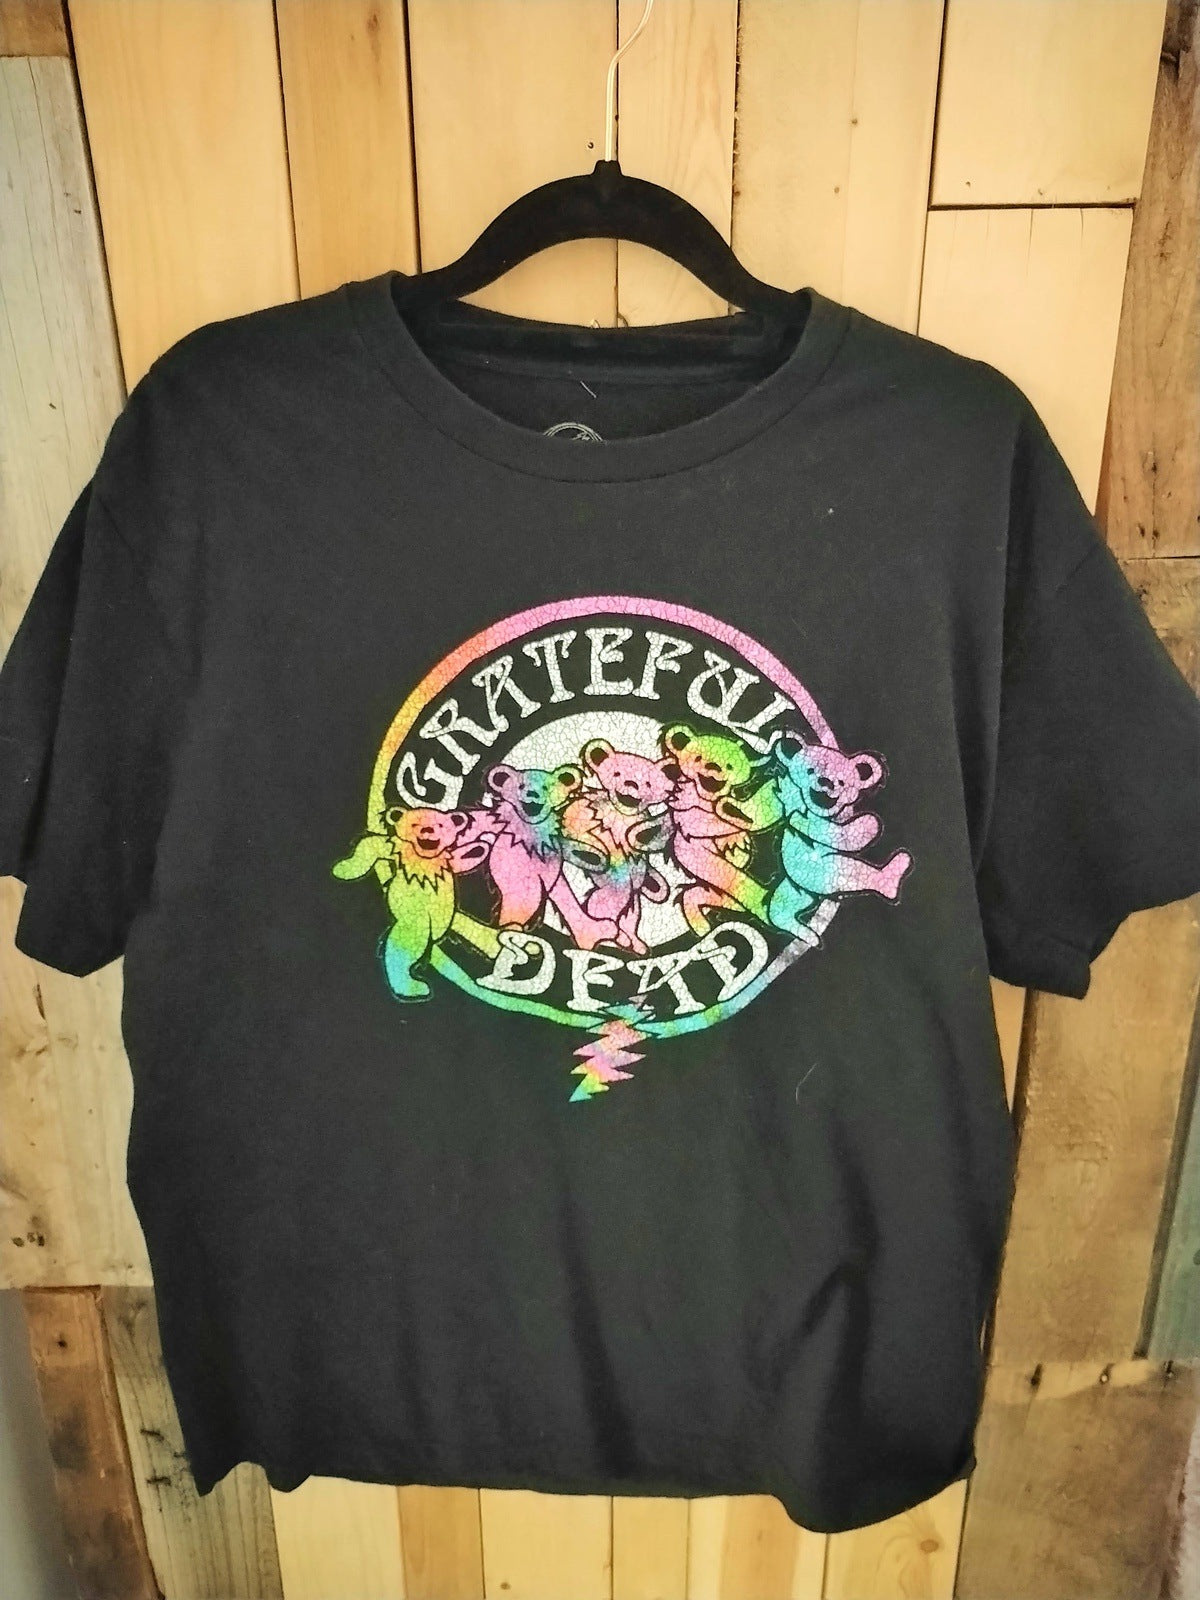 Grateful Dead Official Merchandise T Shirt Size Medium